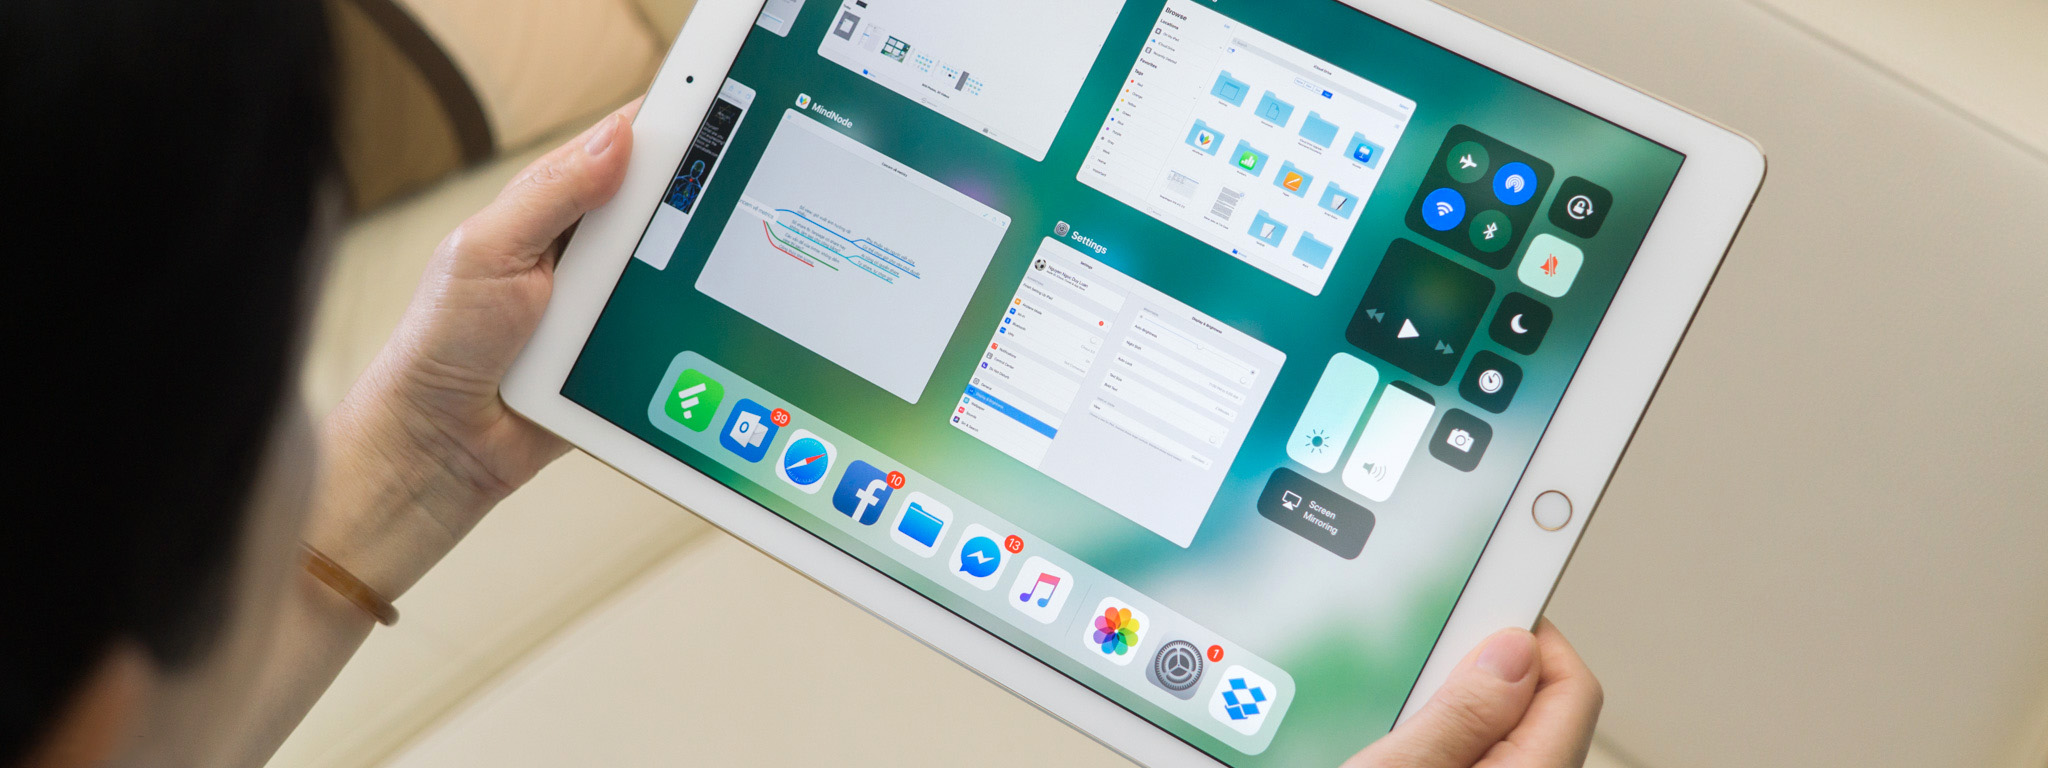 Trải nghiệm iOS 11 trên iPad: đa nhiệm tốt hơn nhiều, nhưng không biết cách thoát app!